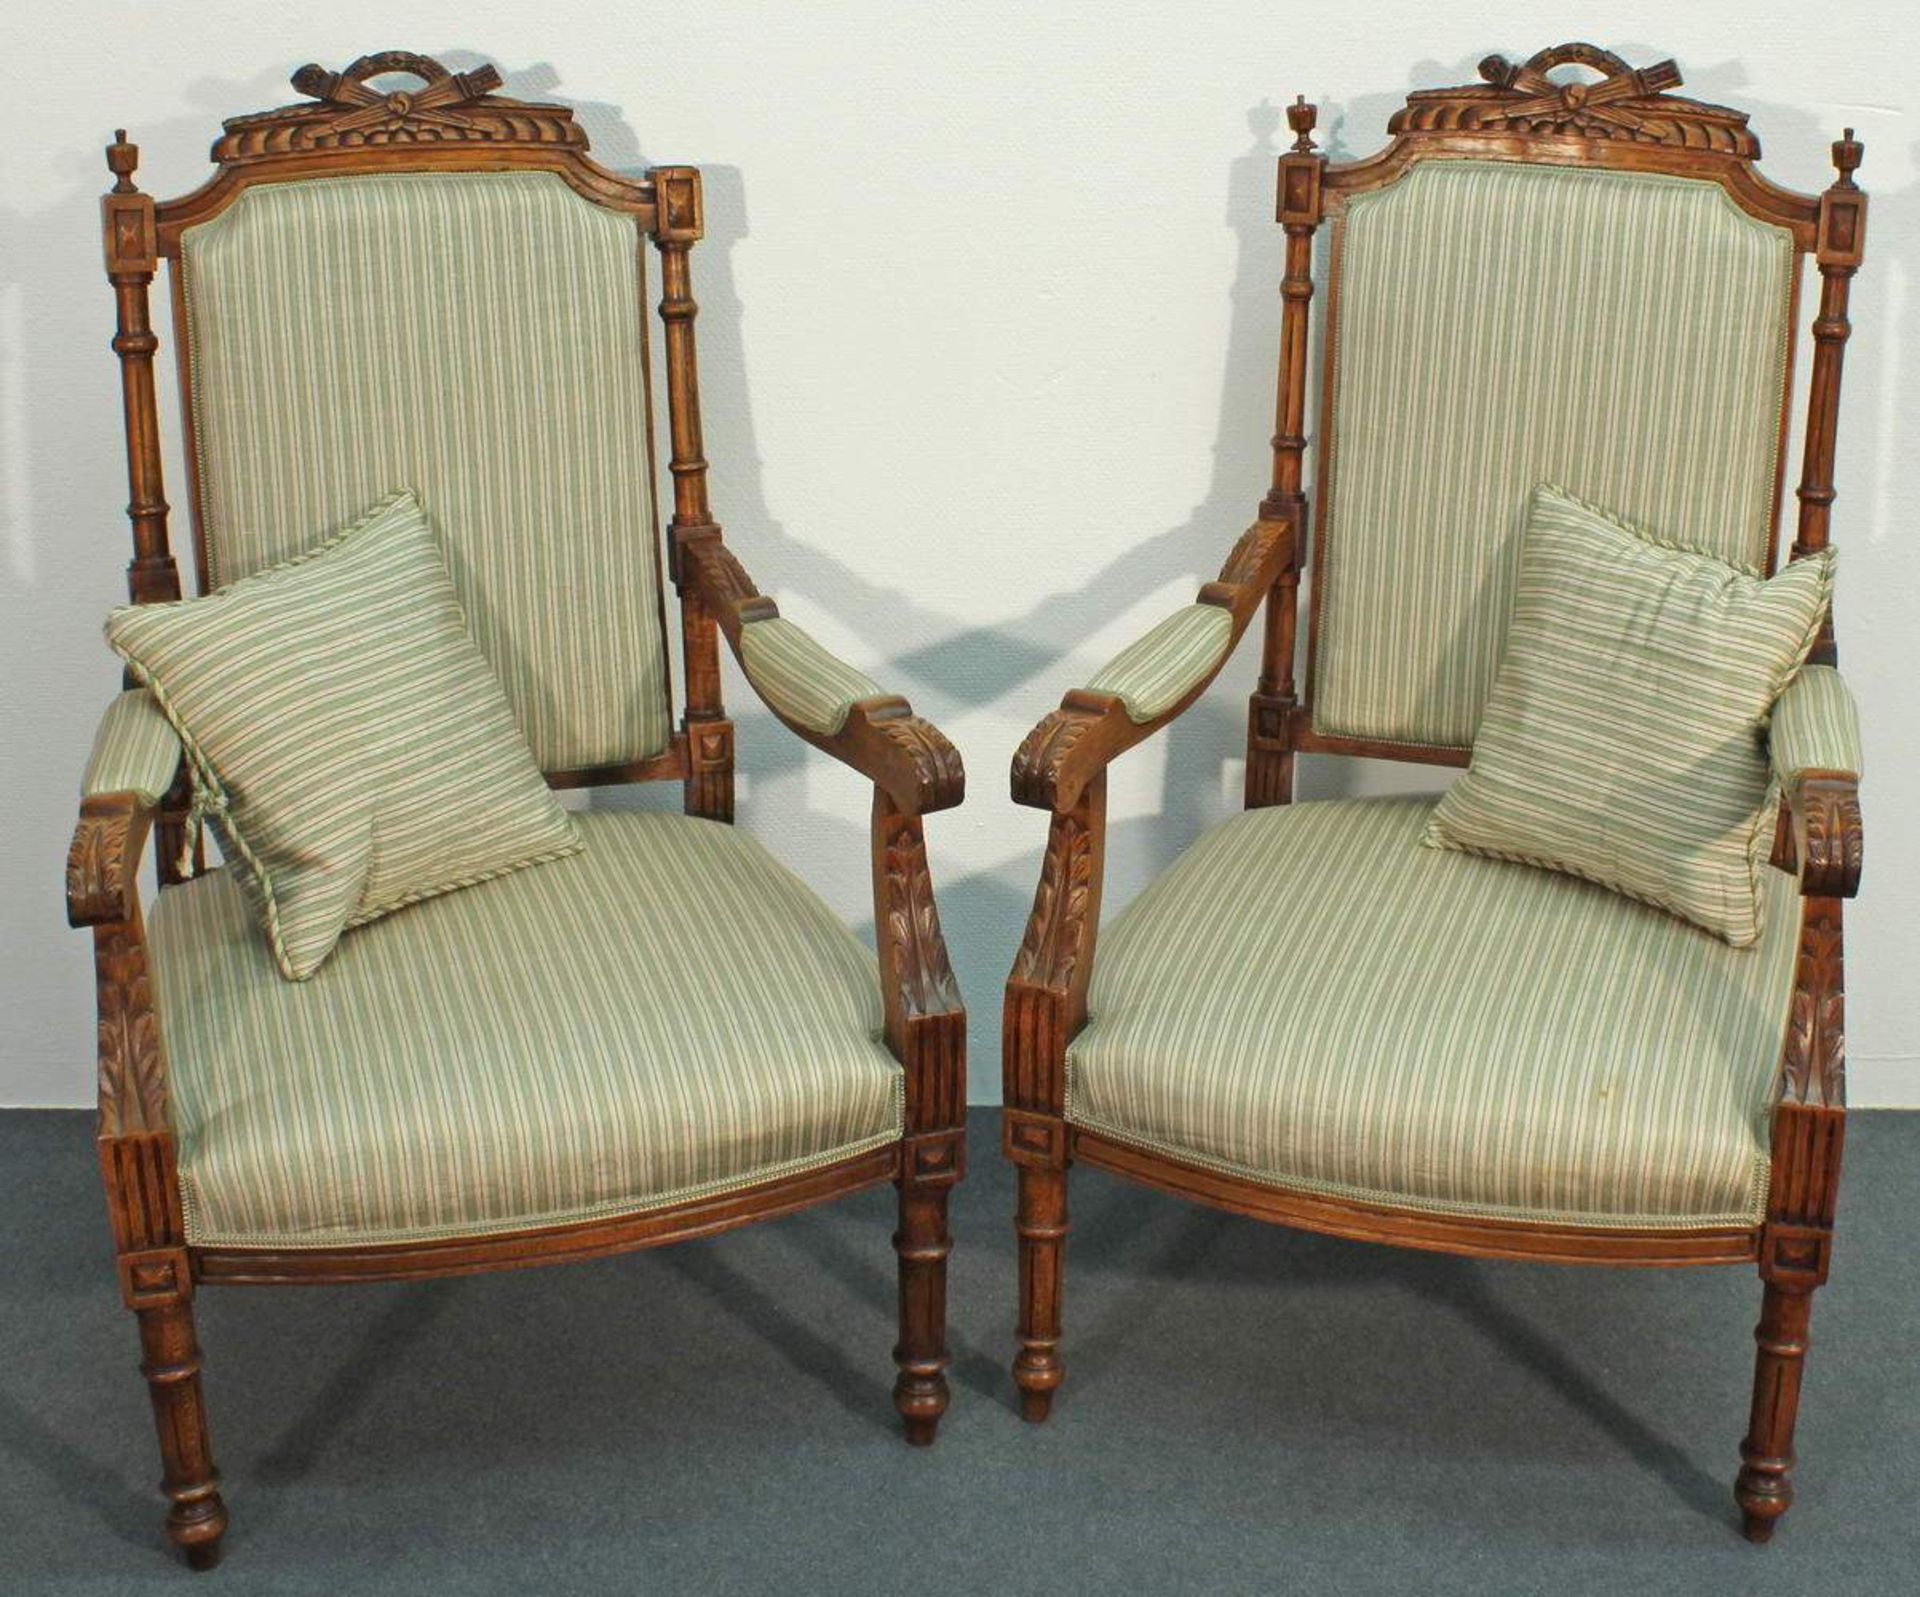 Paar Sessel, Ende 19. Jh., Louis XVI-Stil, Buche nussbaumfarbig, Sitz-, Rücken- und Armpolster,